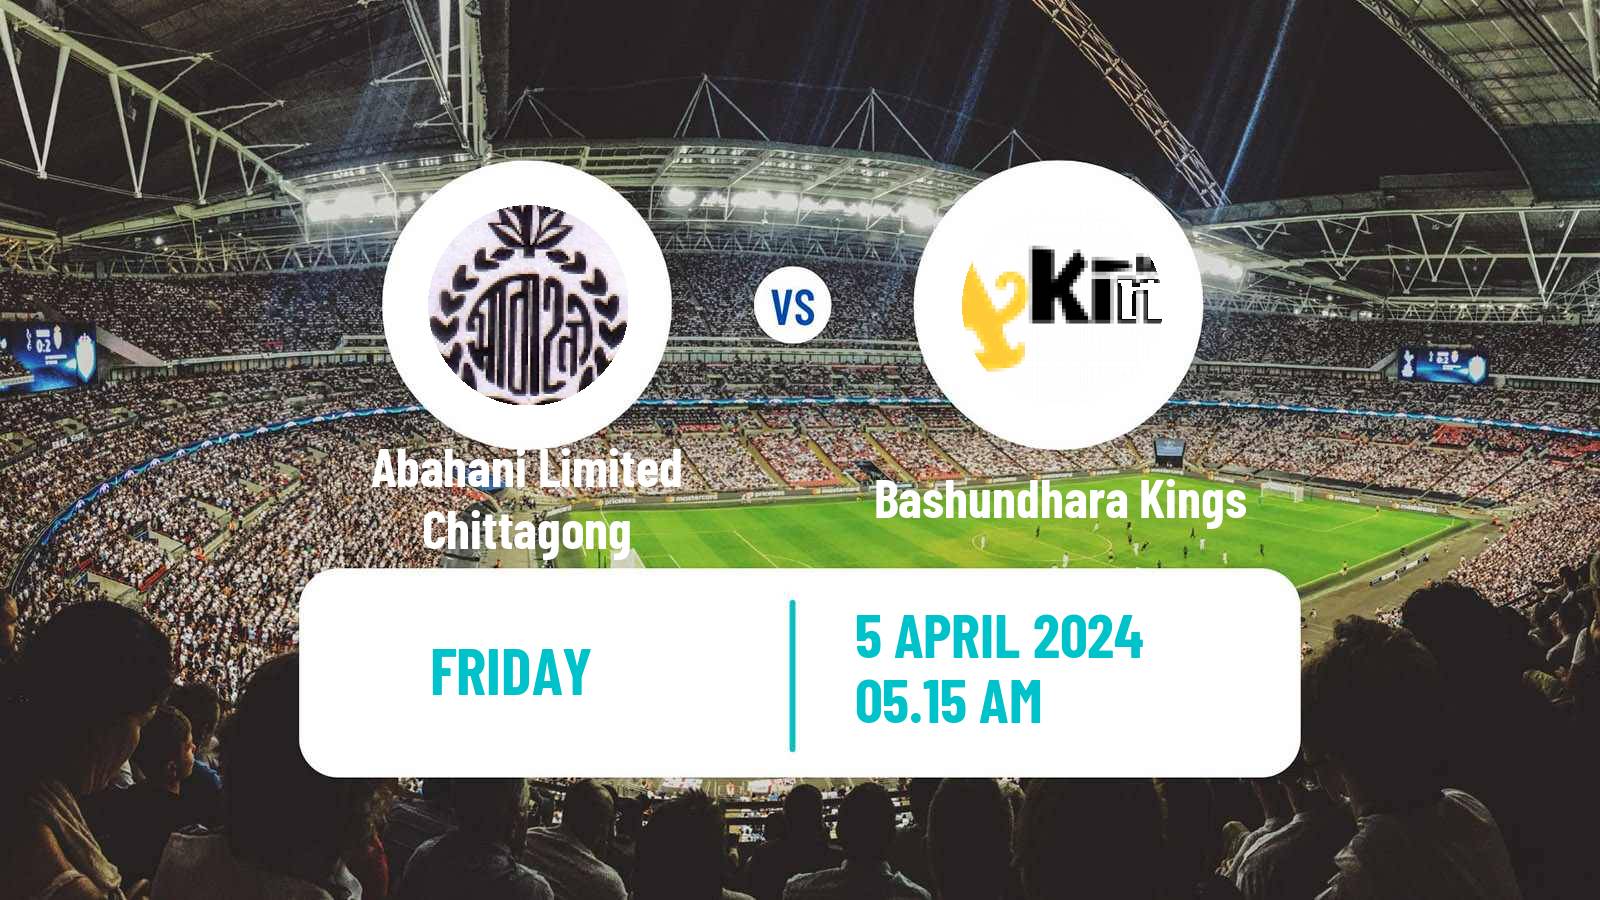 Soccer Bangladesh Premier League Football Abahani Limited Chittagong - Bashundhara Kings